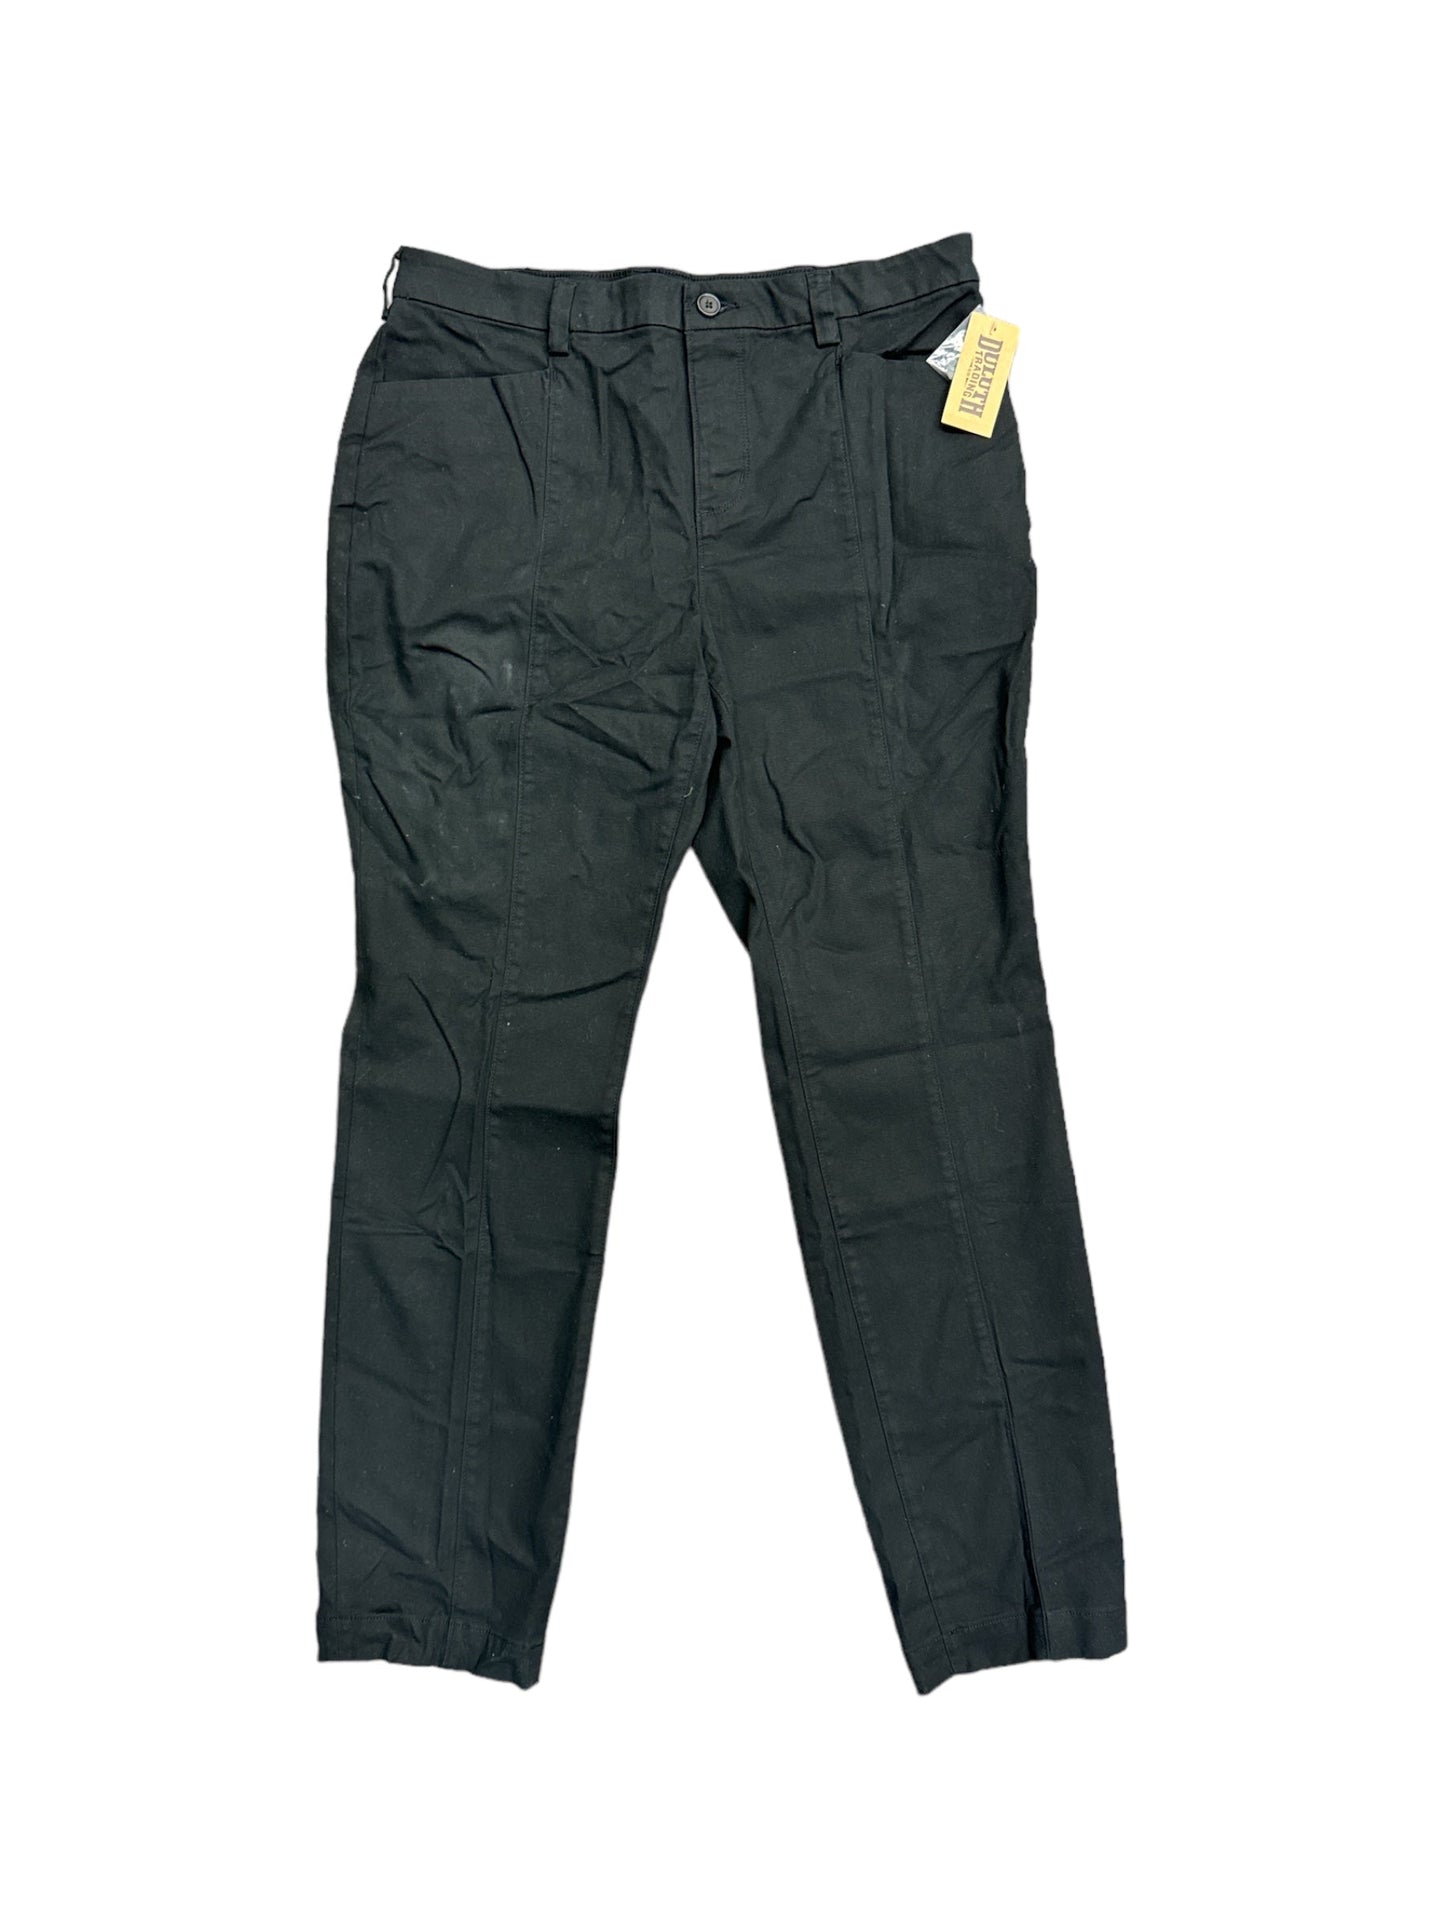 Black Pants Cargo & Utility Duluth Trading, Size 14